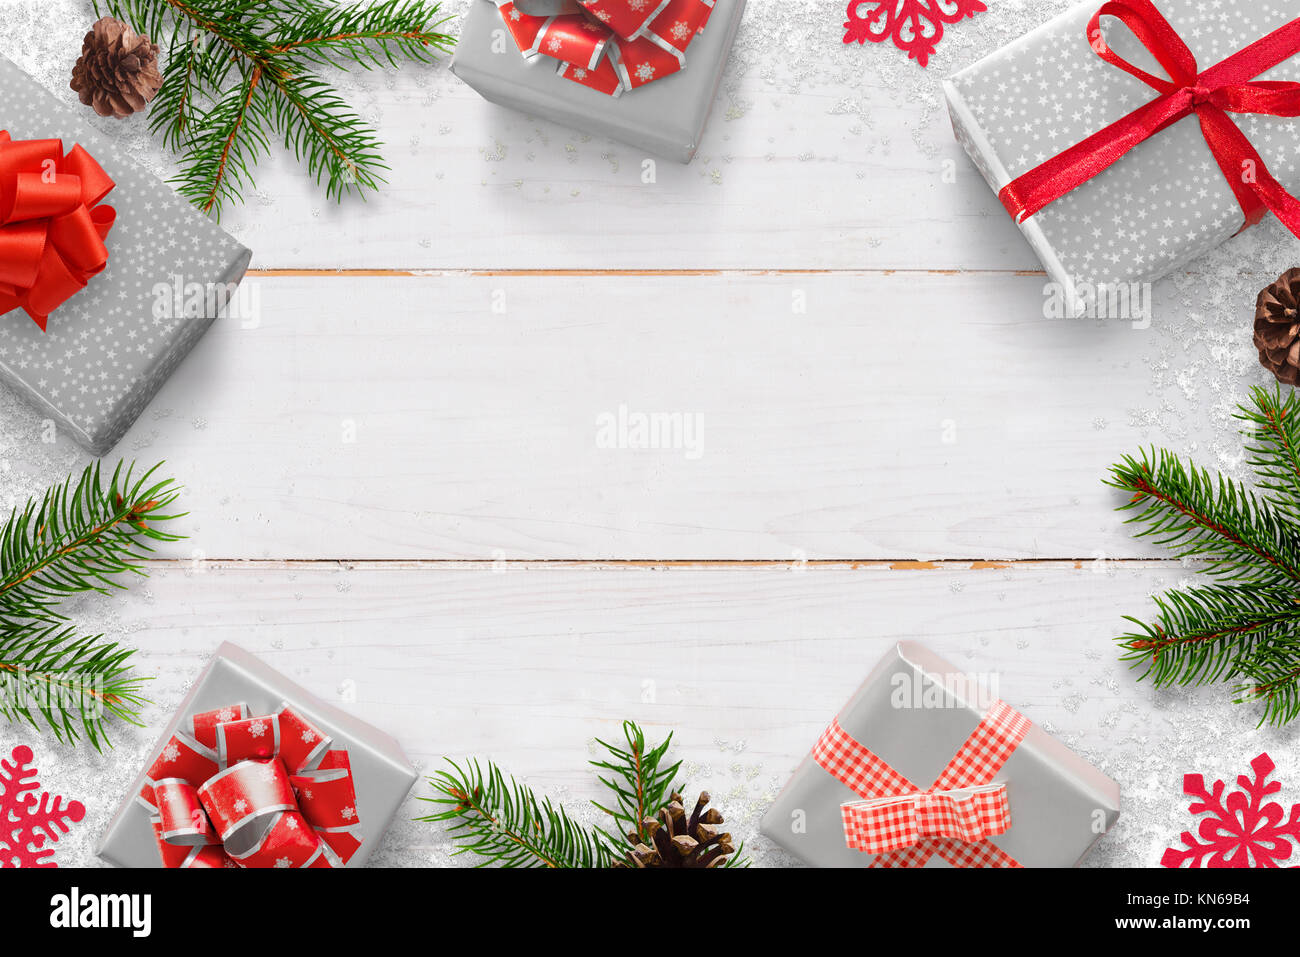 Weihnachten Neujahr Hintergrund mit Geschenken und freien Platz für Text. Weißes Holzbrett mit Weihnachtsbaum Zweige, kiefernzapfen, und Schneeflocke Dekoration Stockfoto